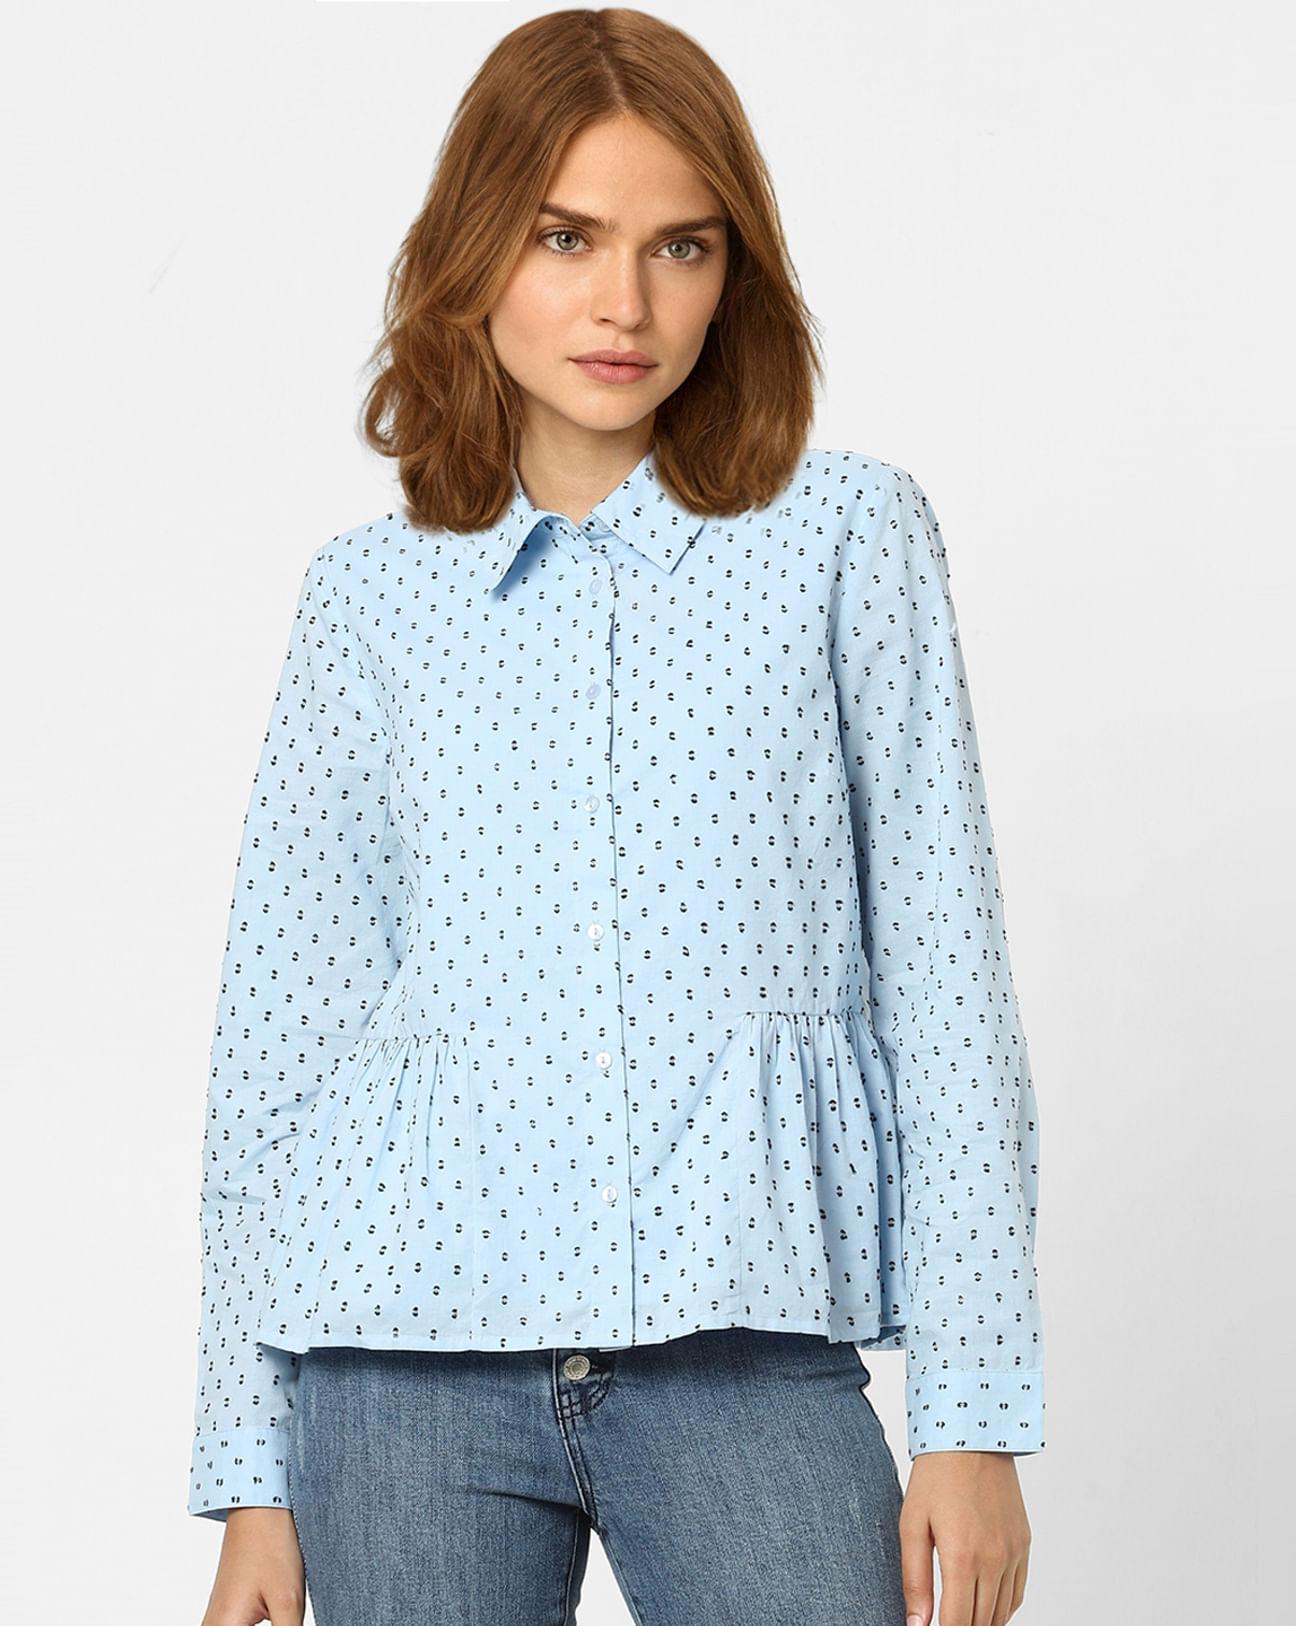 white polka dot shirt